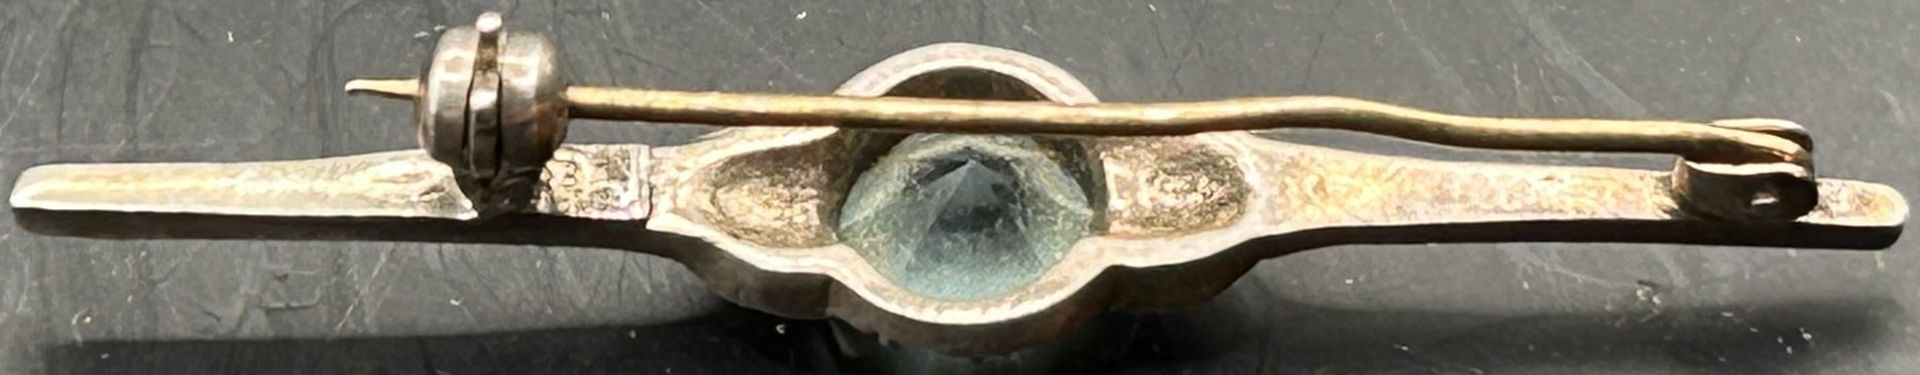 Silber-Nadel mit blauen Stein, L-5 cm, Tragespuren - Image 3 of 3